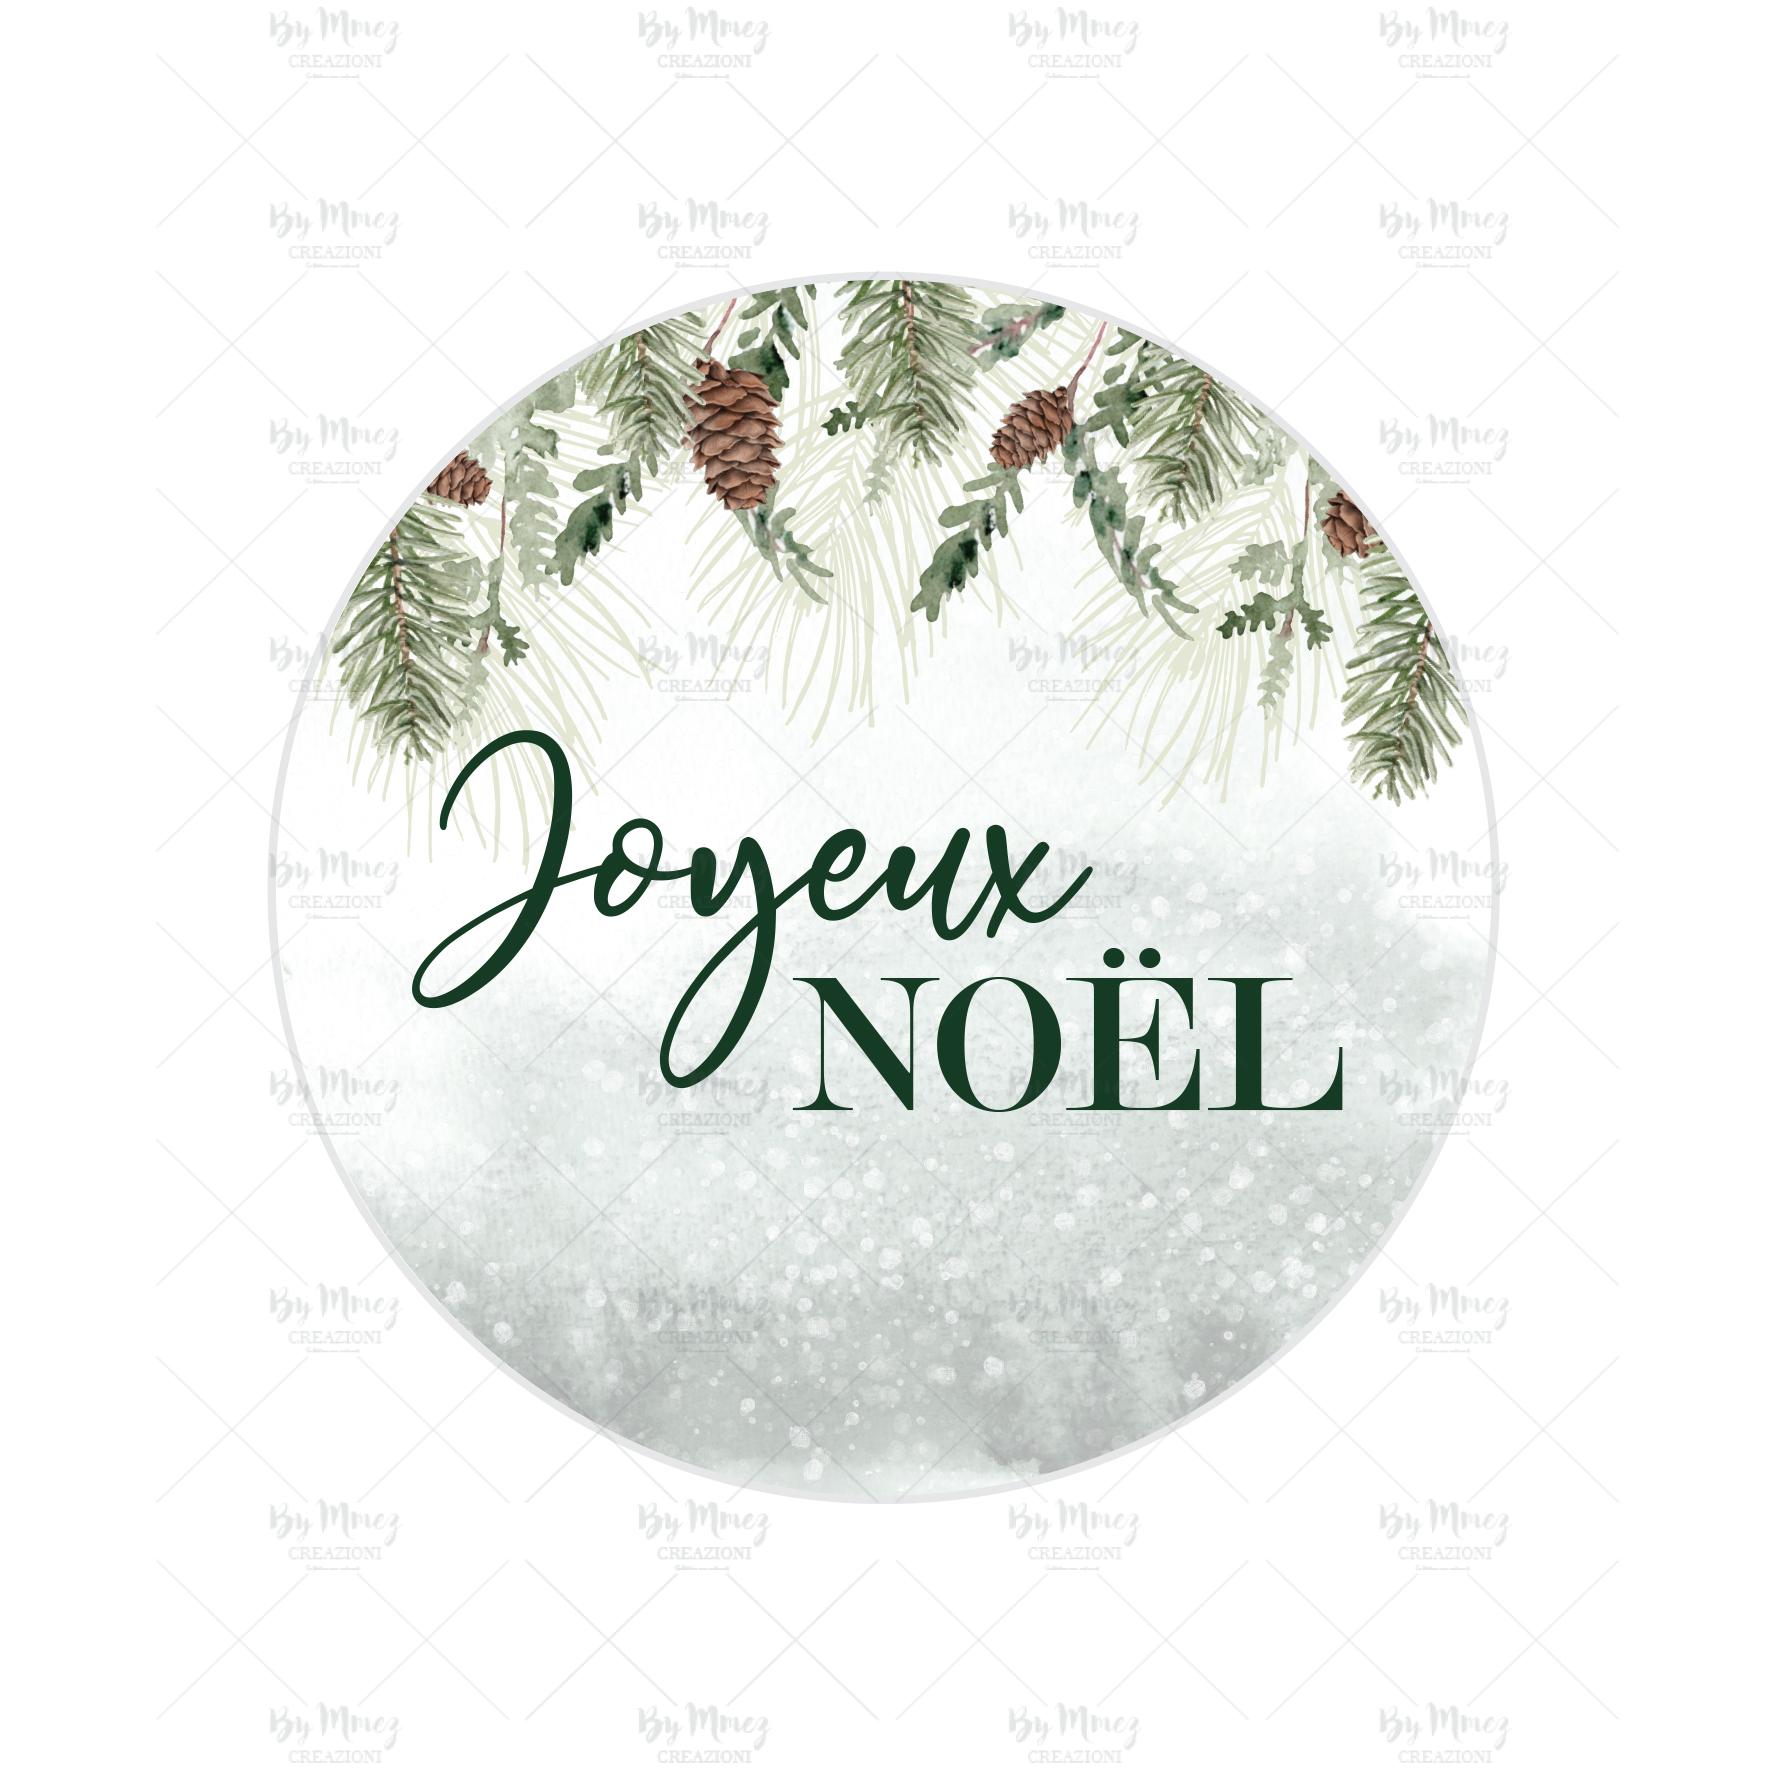 Stickers autocollants Étiquettes Cadeaux décoration pour Noël